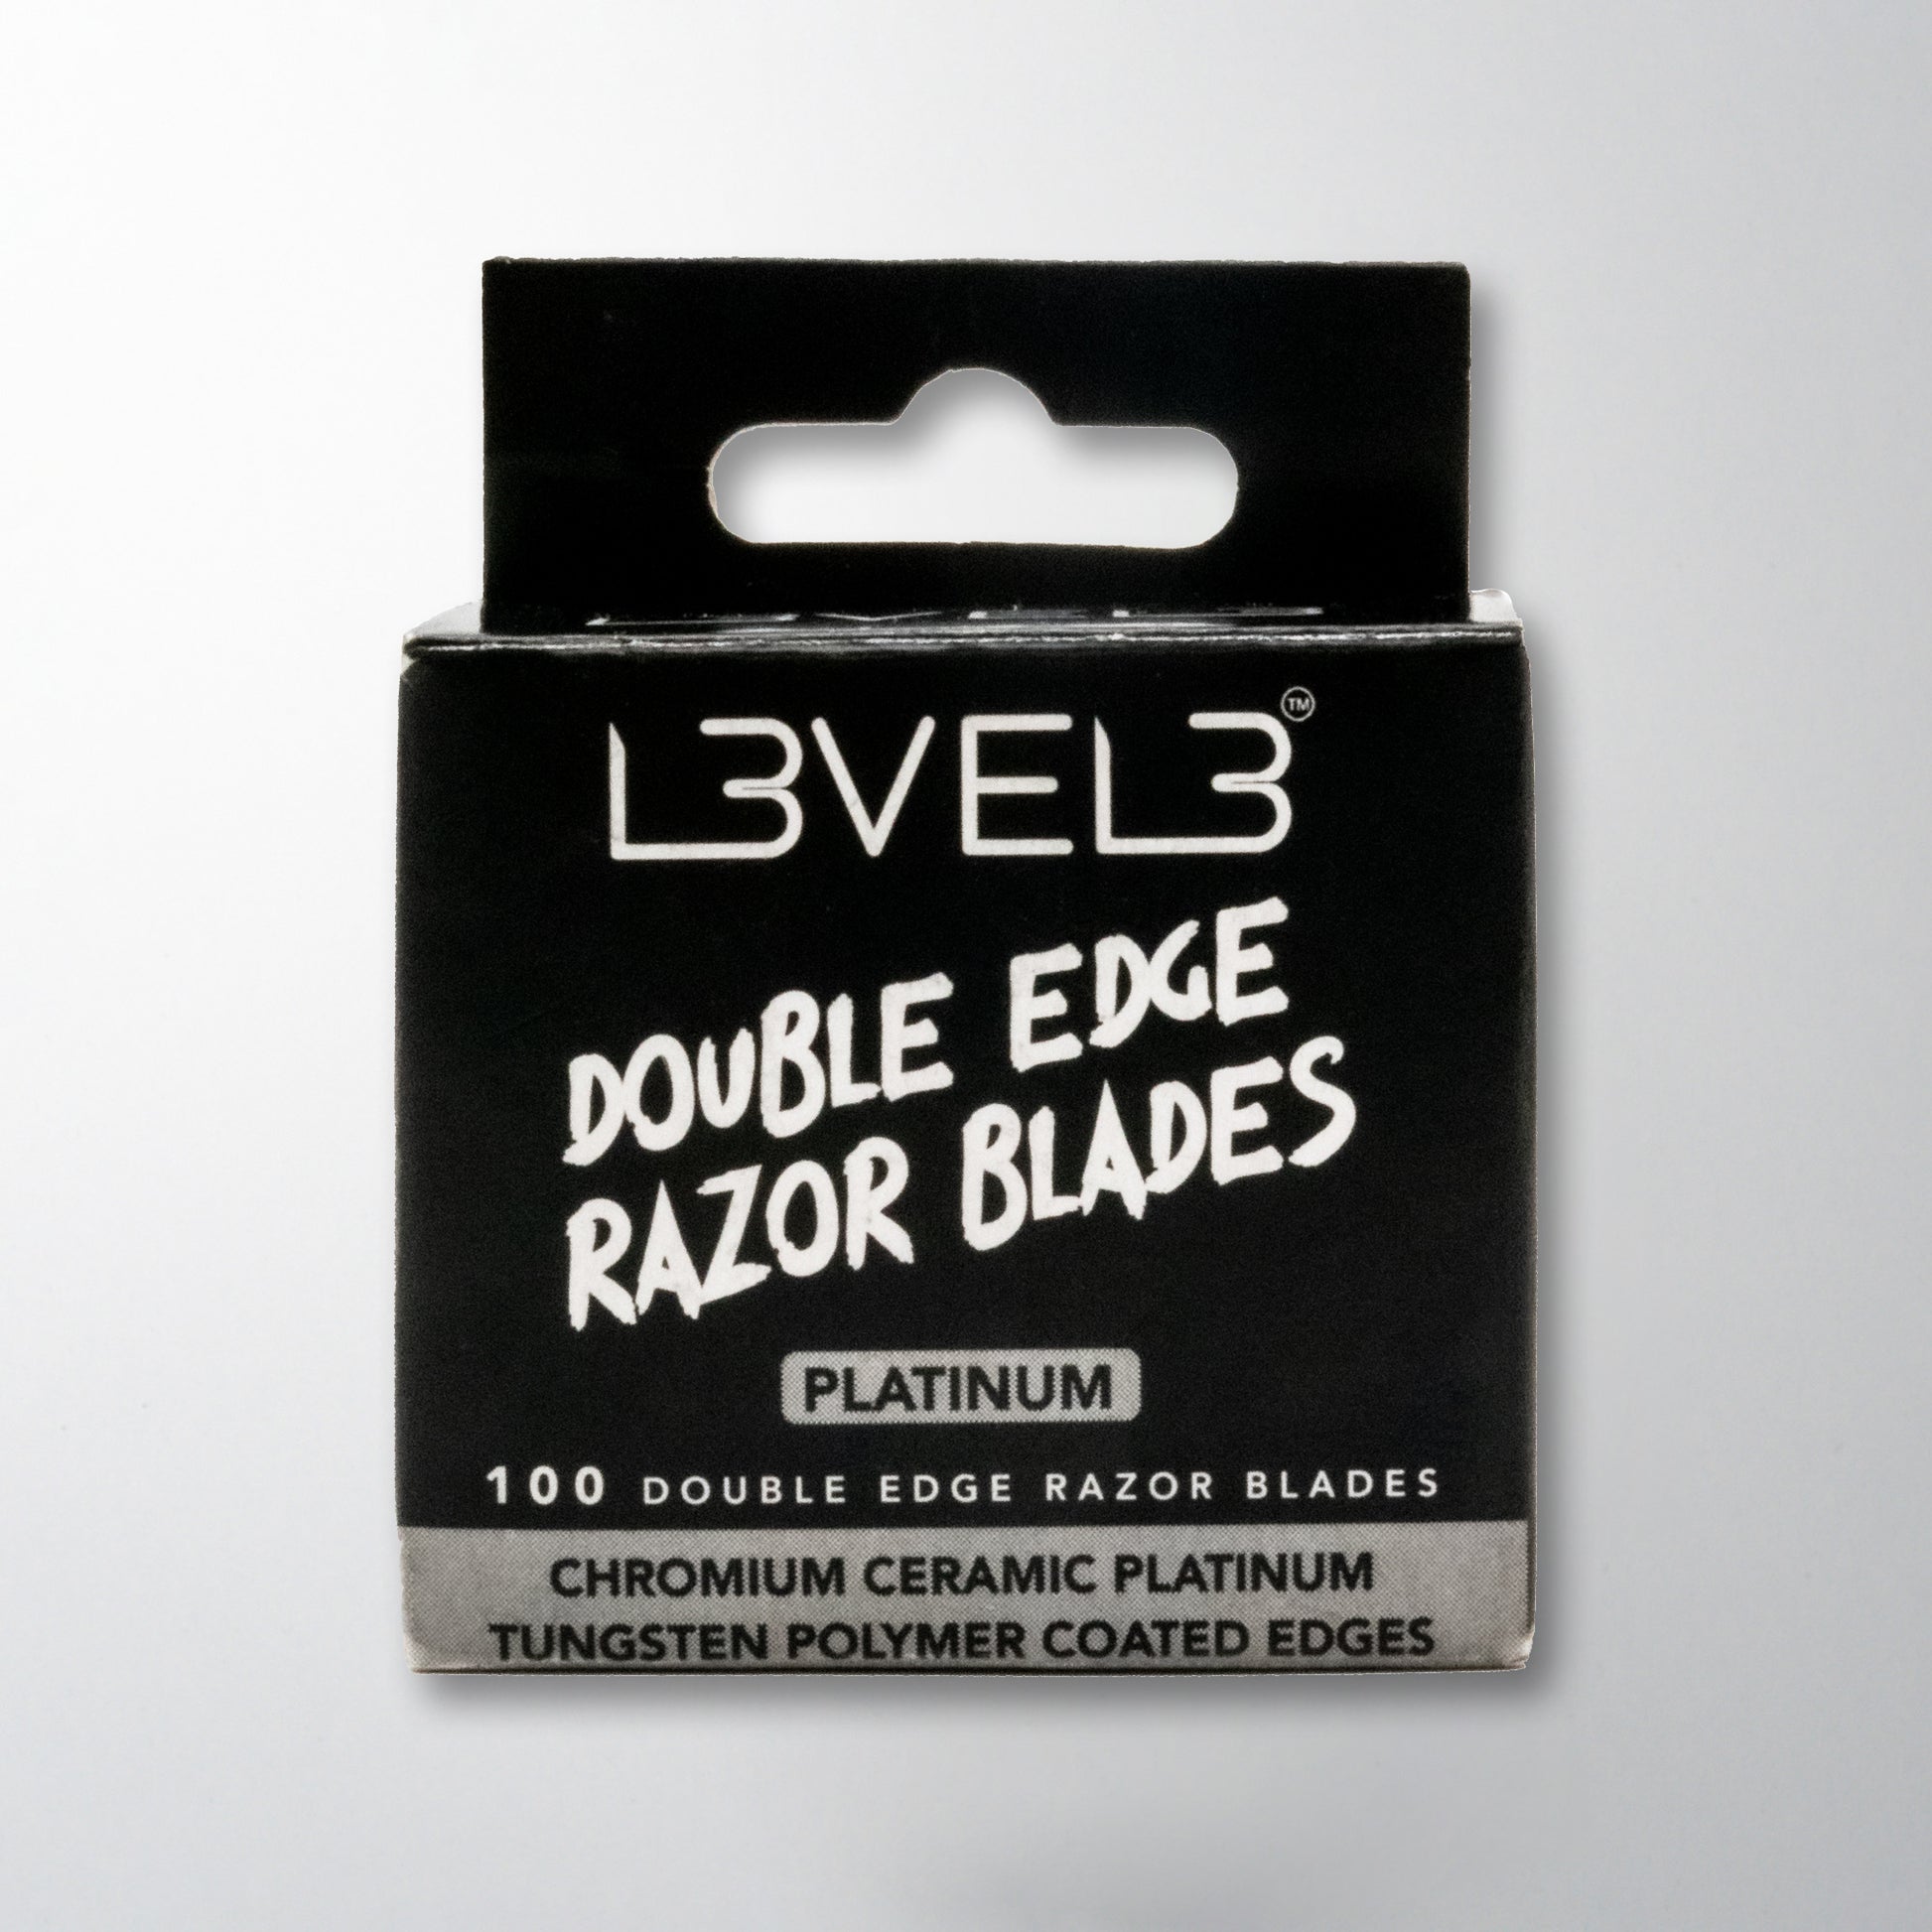 Double Edge Razor Blades